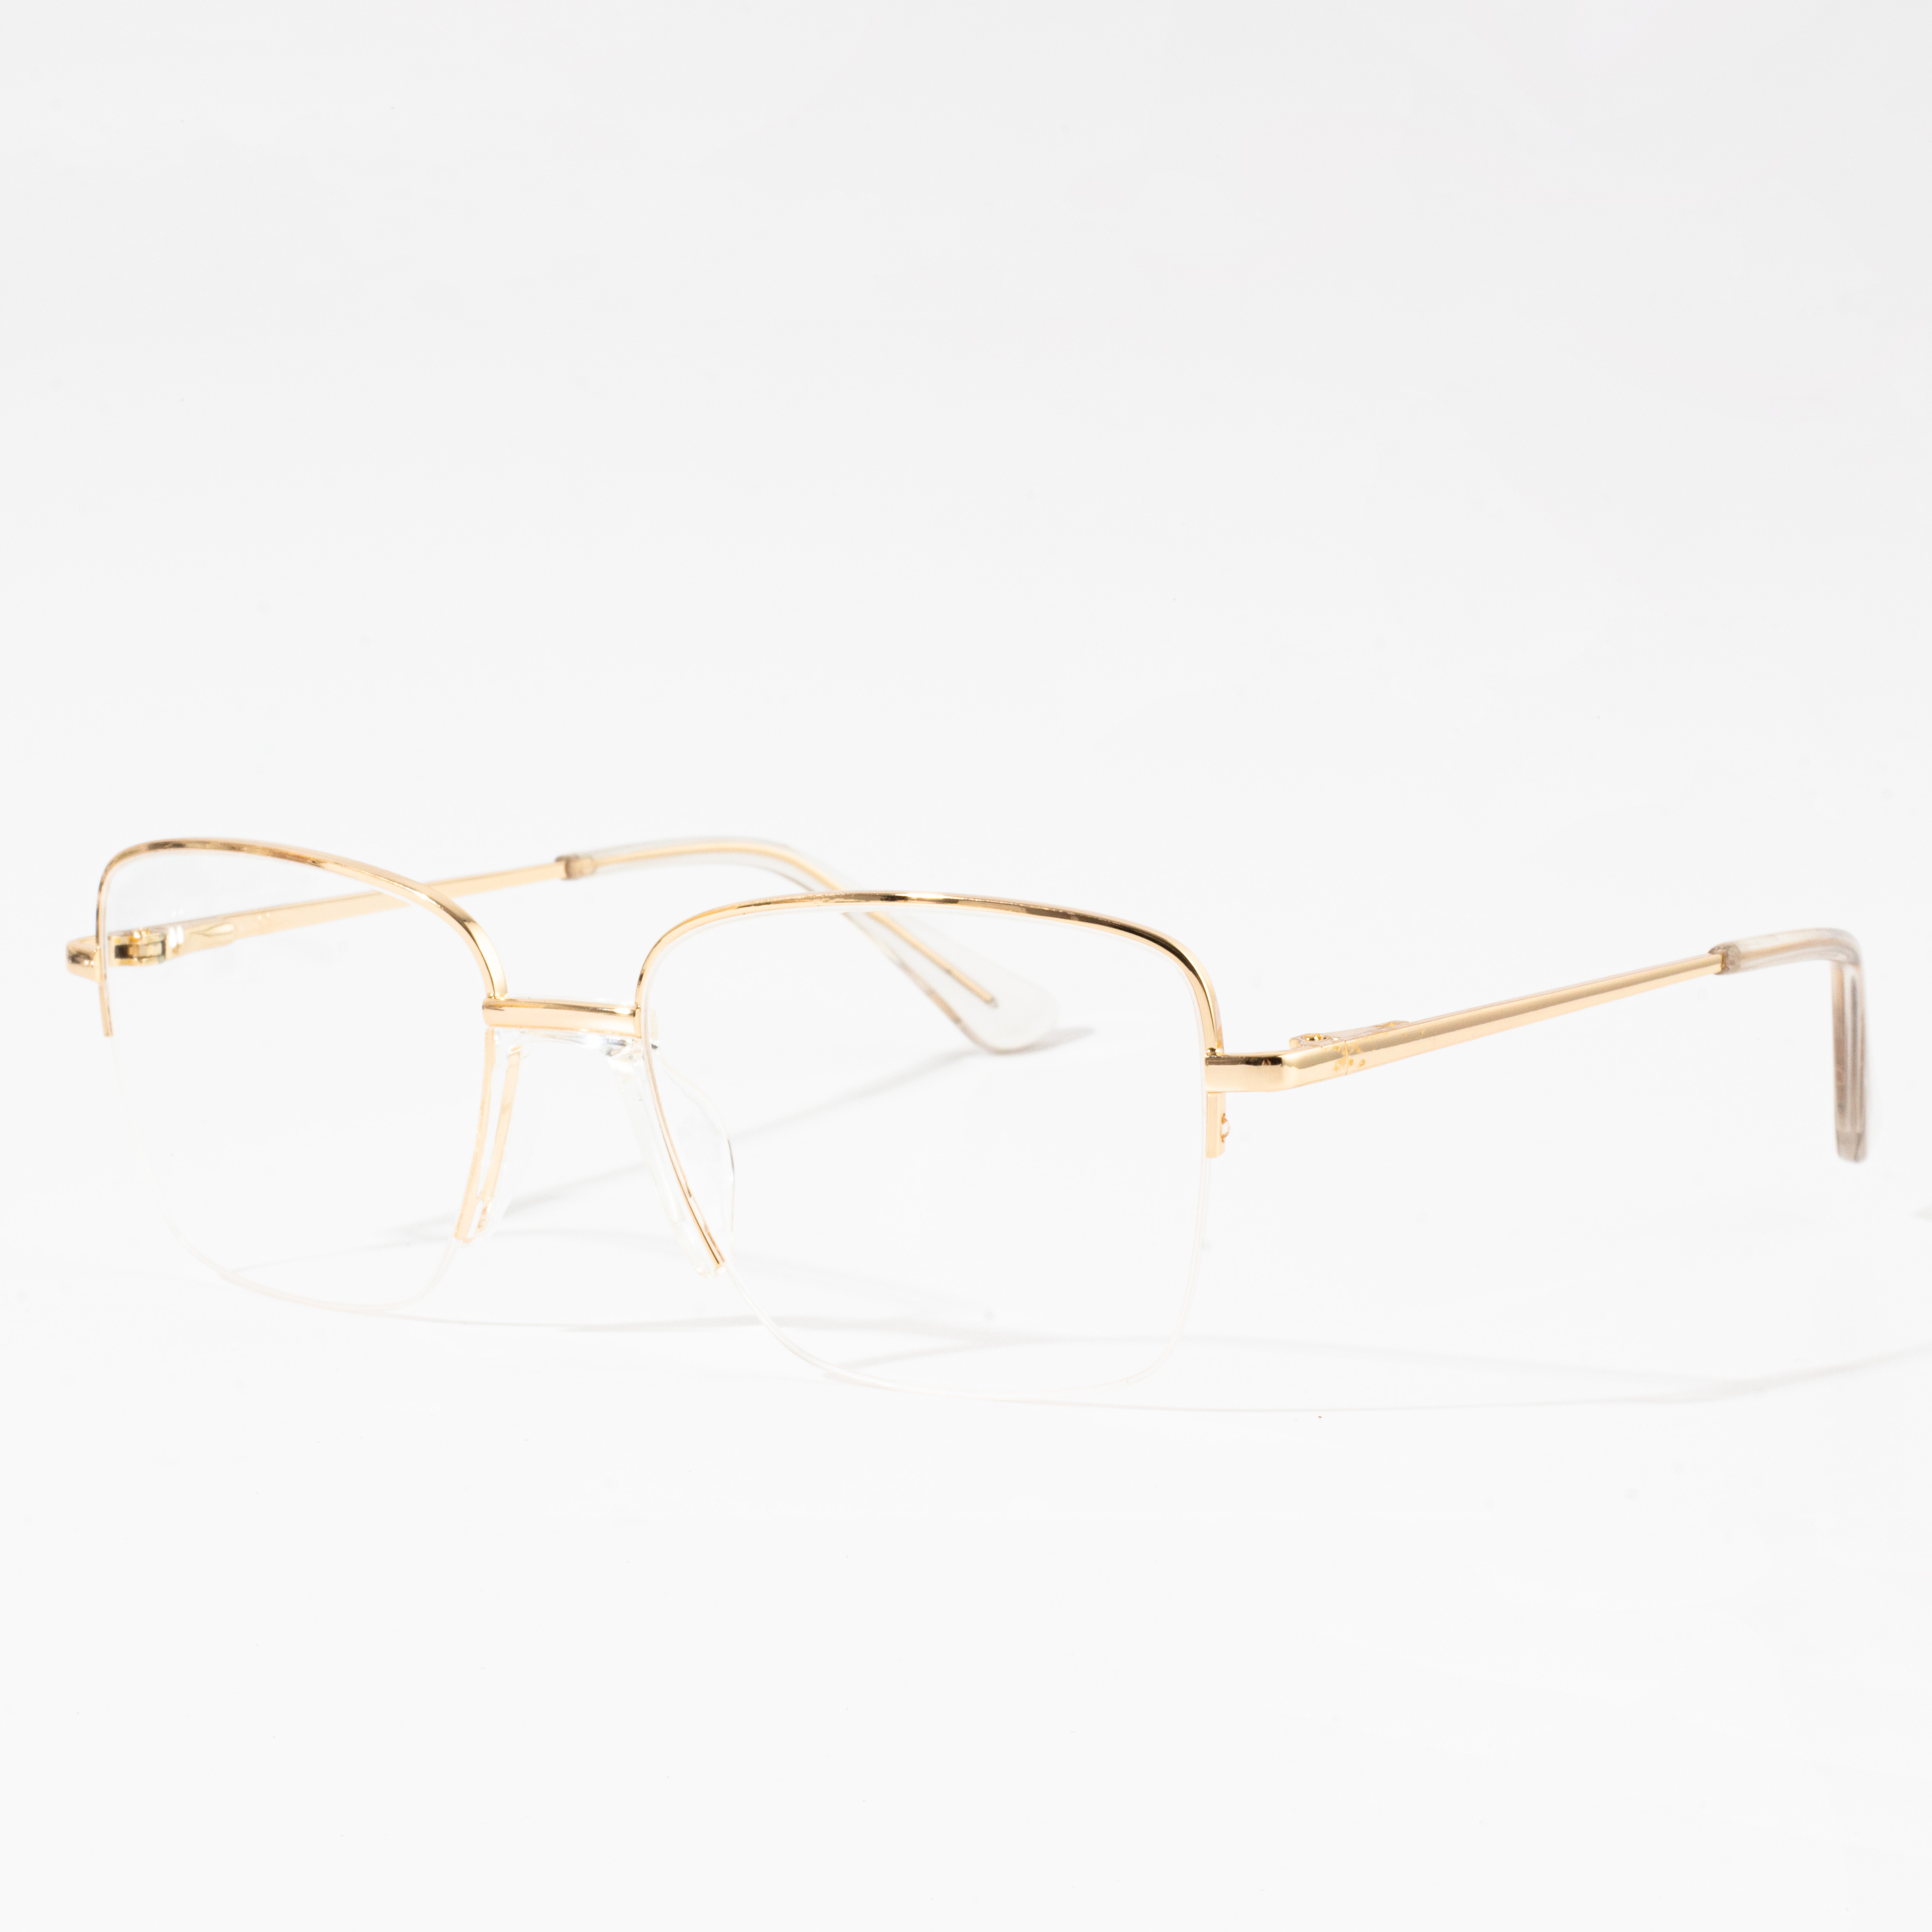 men's eyeglasses frames